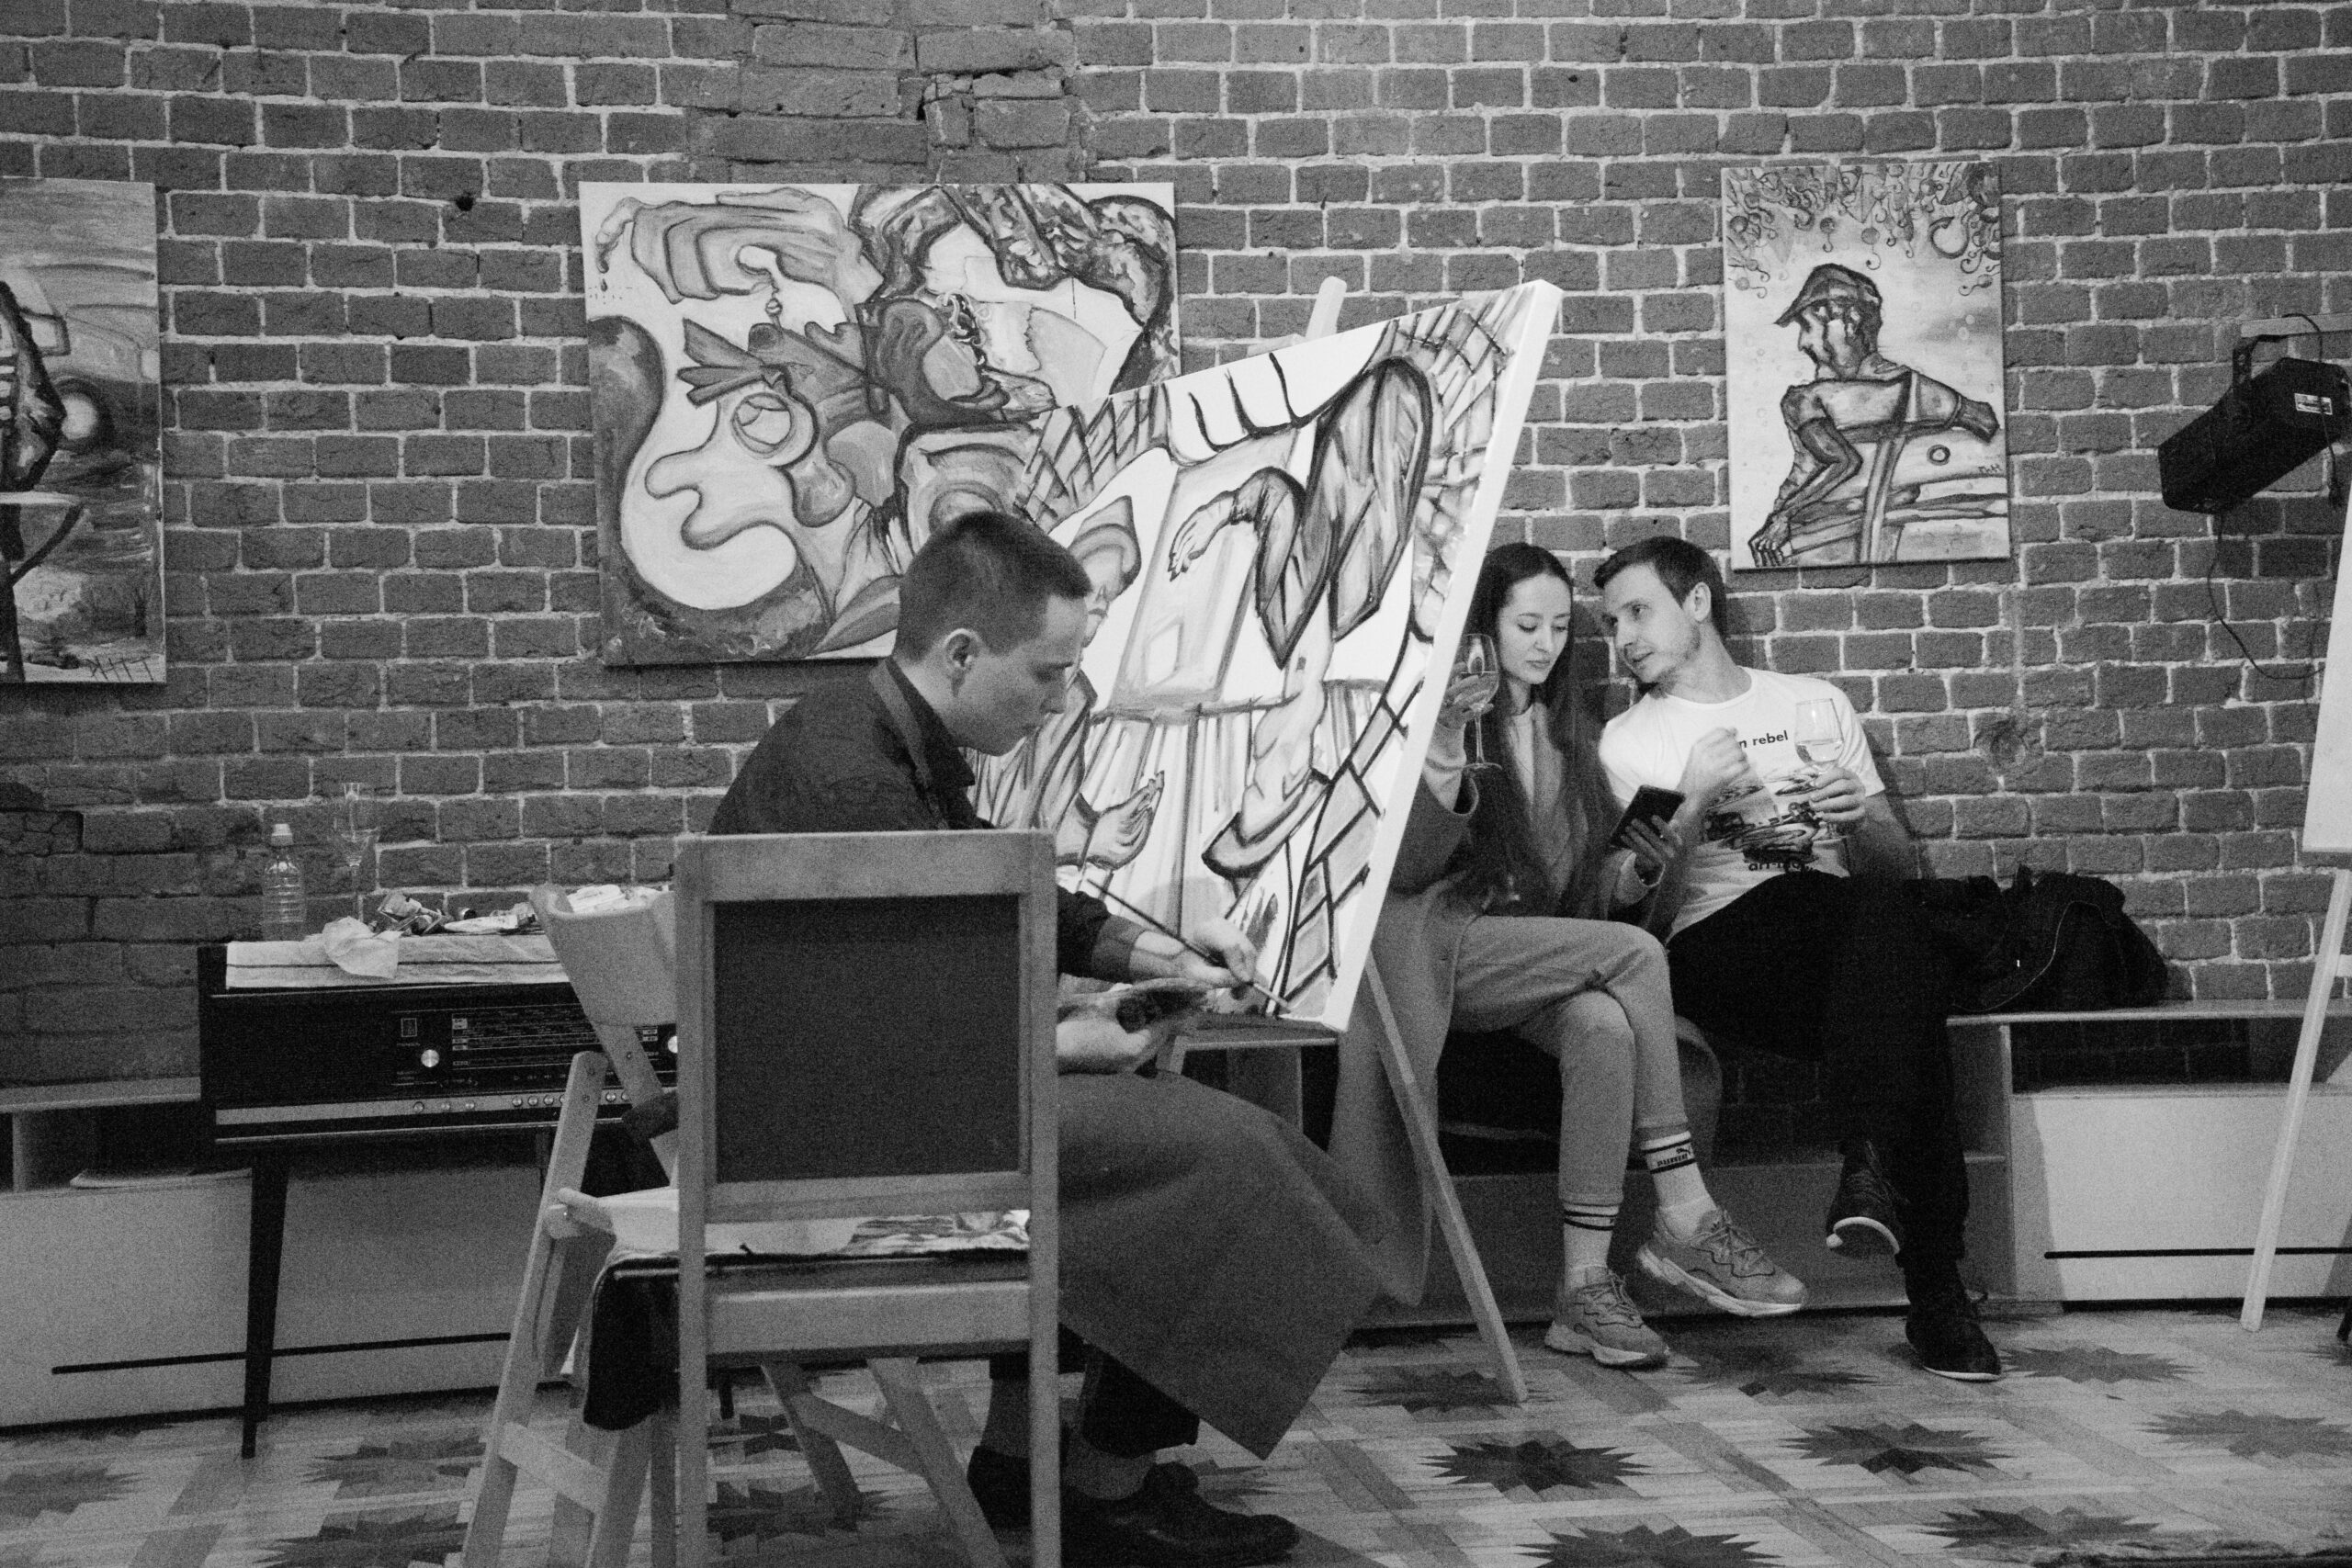 «Я нарисовал в центре холста круг и на скотч приклеил туда включённый секундомер»: художник Павел Климов о сюрреализме, преодолении страха и путях развития в арт-сфере